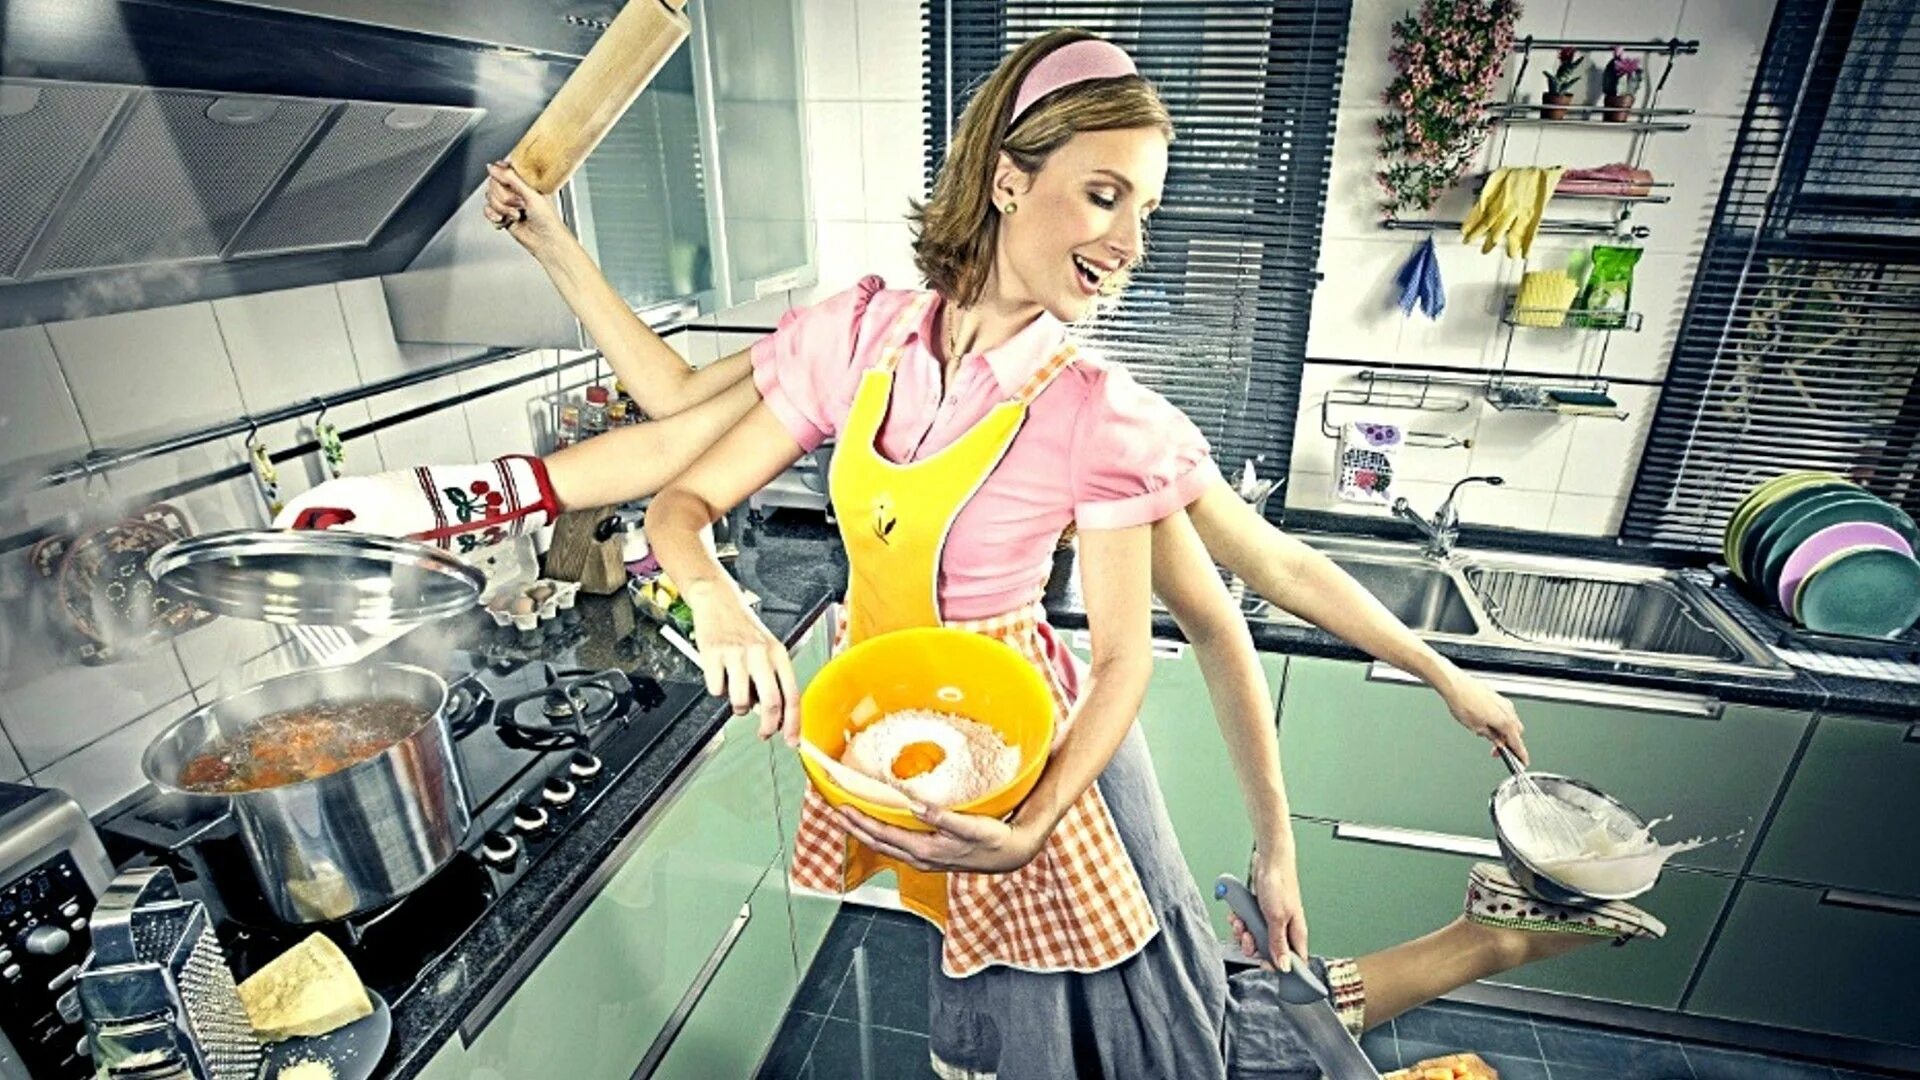 Я хозяйка этой жизни 134. Женщина домохозяйка. Кухня. Домохозяйка со стажем. Примерная жена.